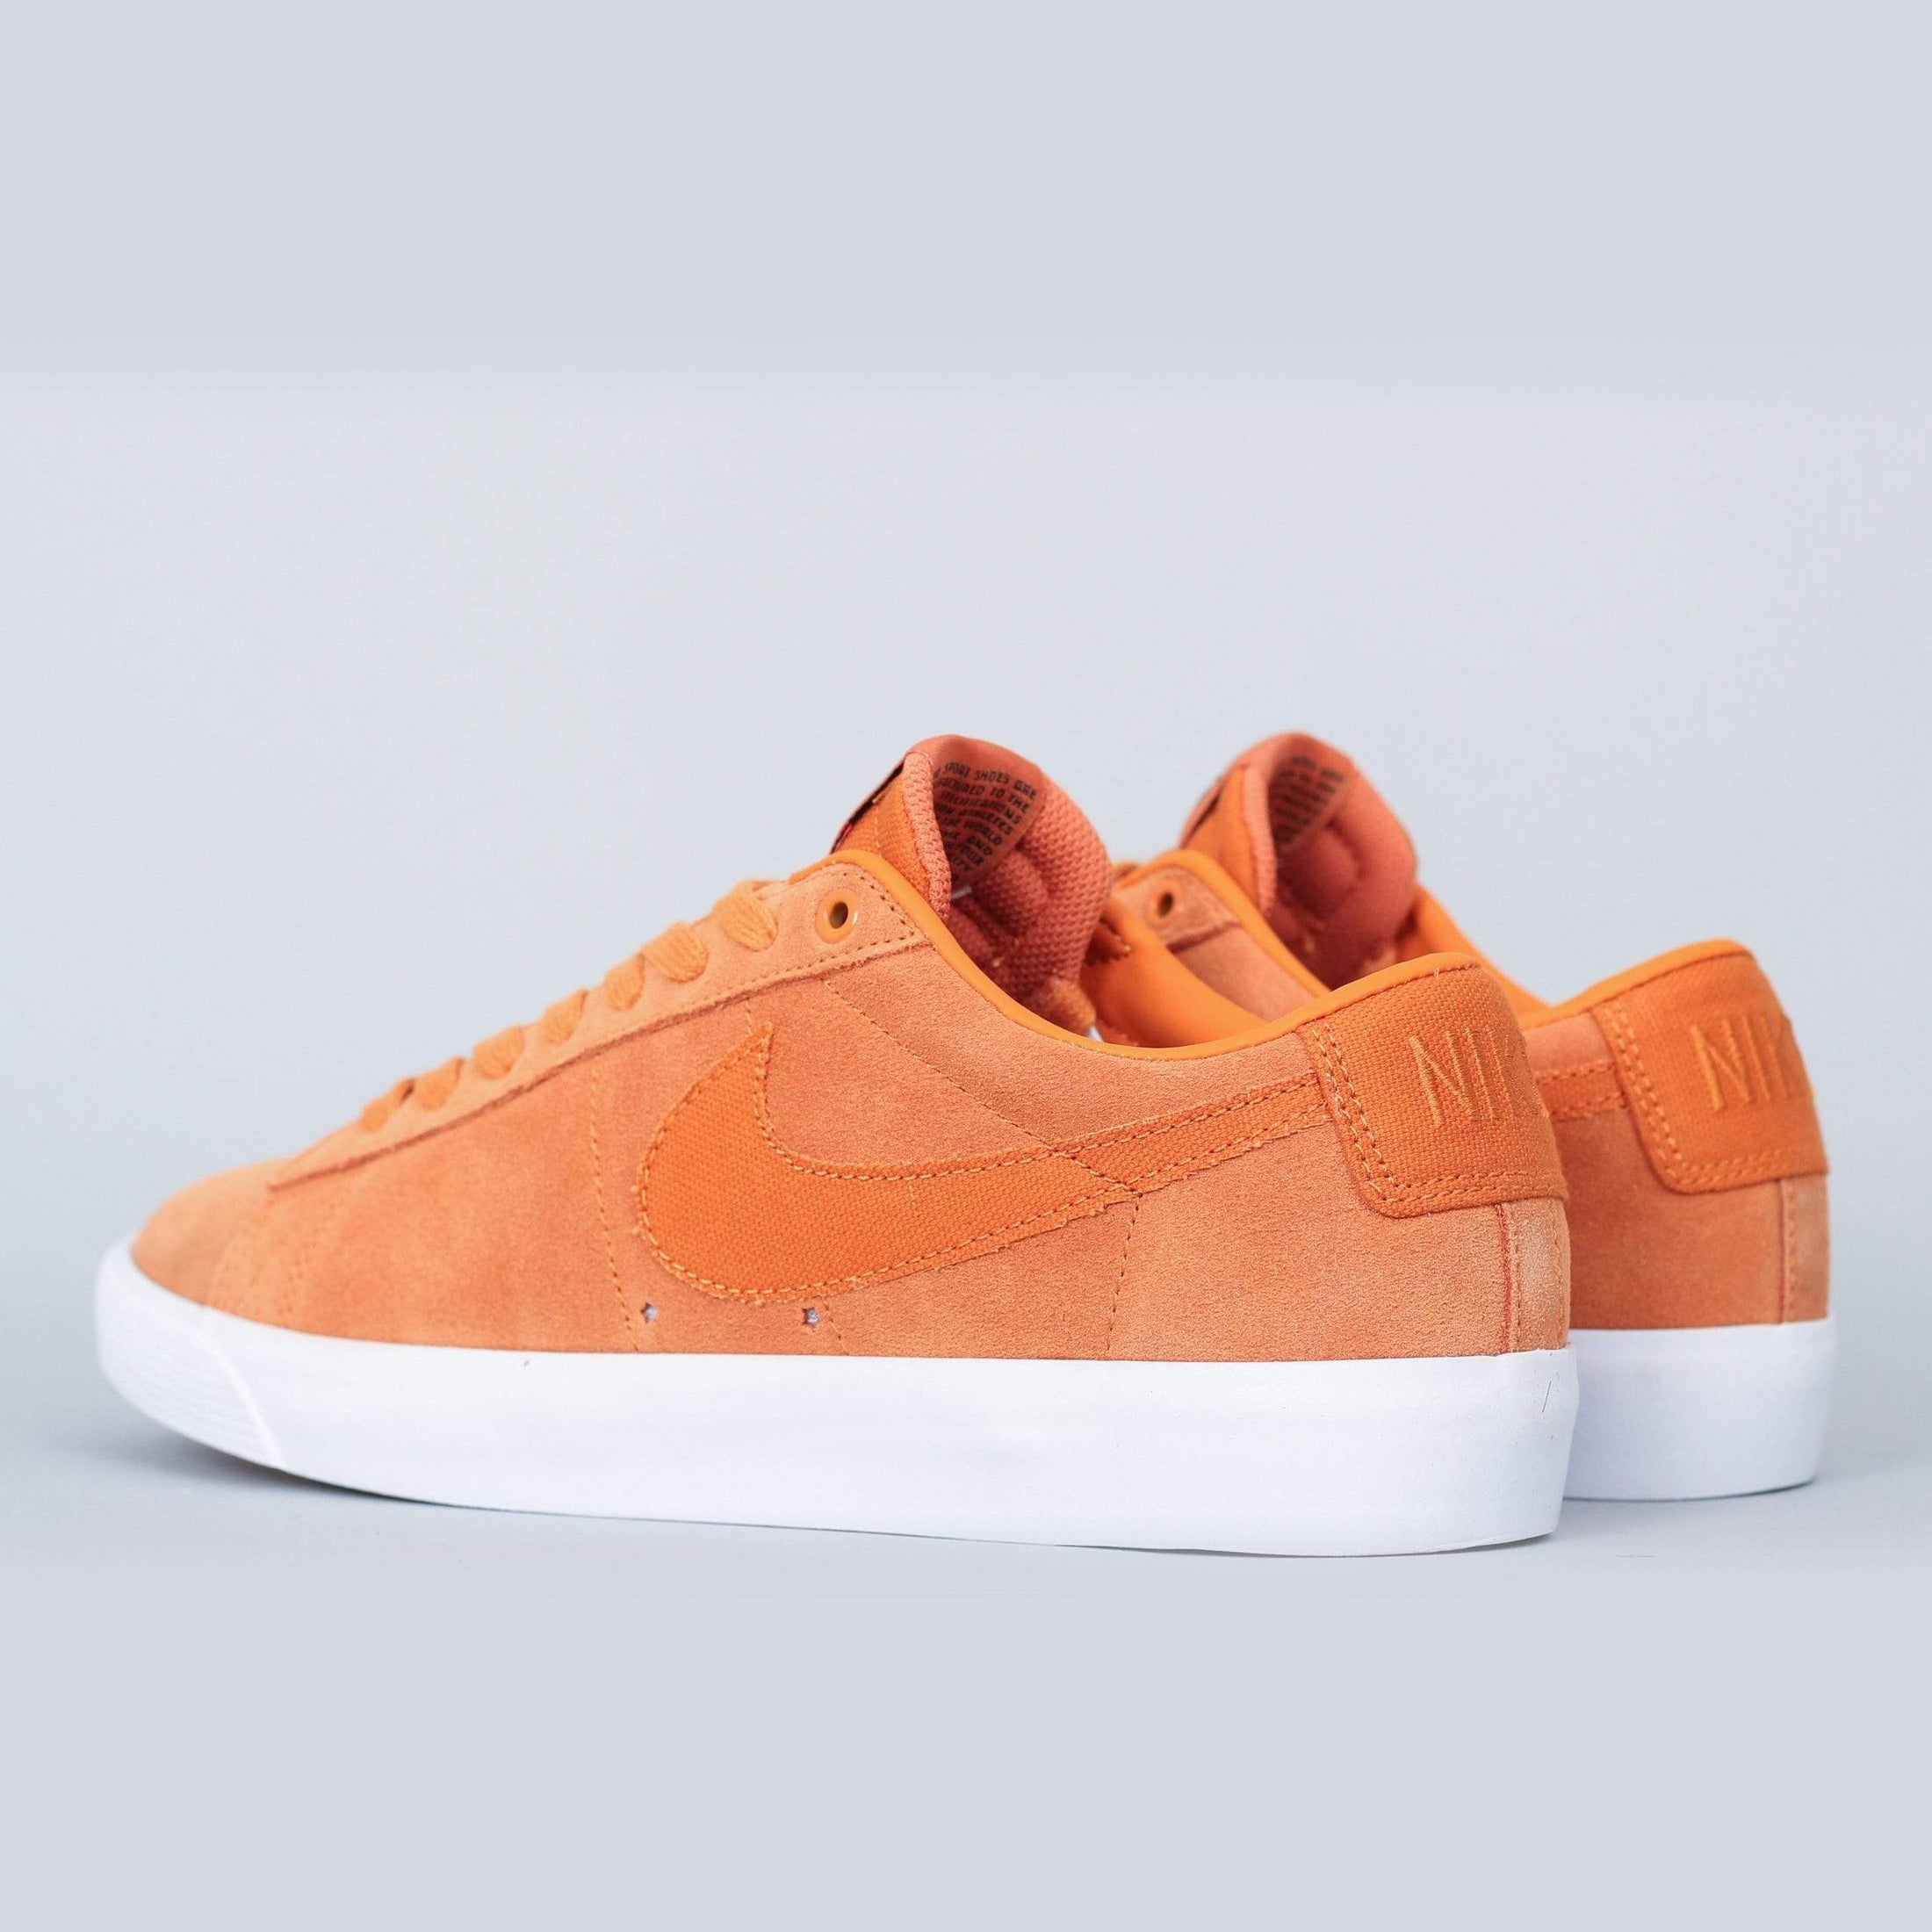 Nike SB Blazer Low GT Shoes Cinder Orange / Cinder Orange